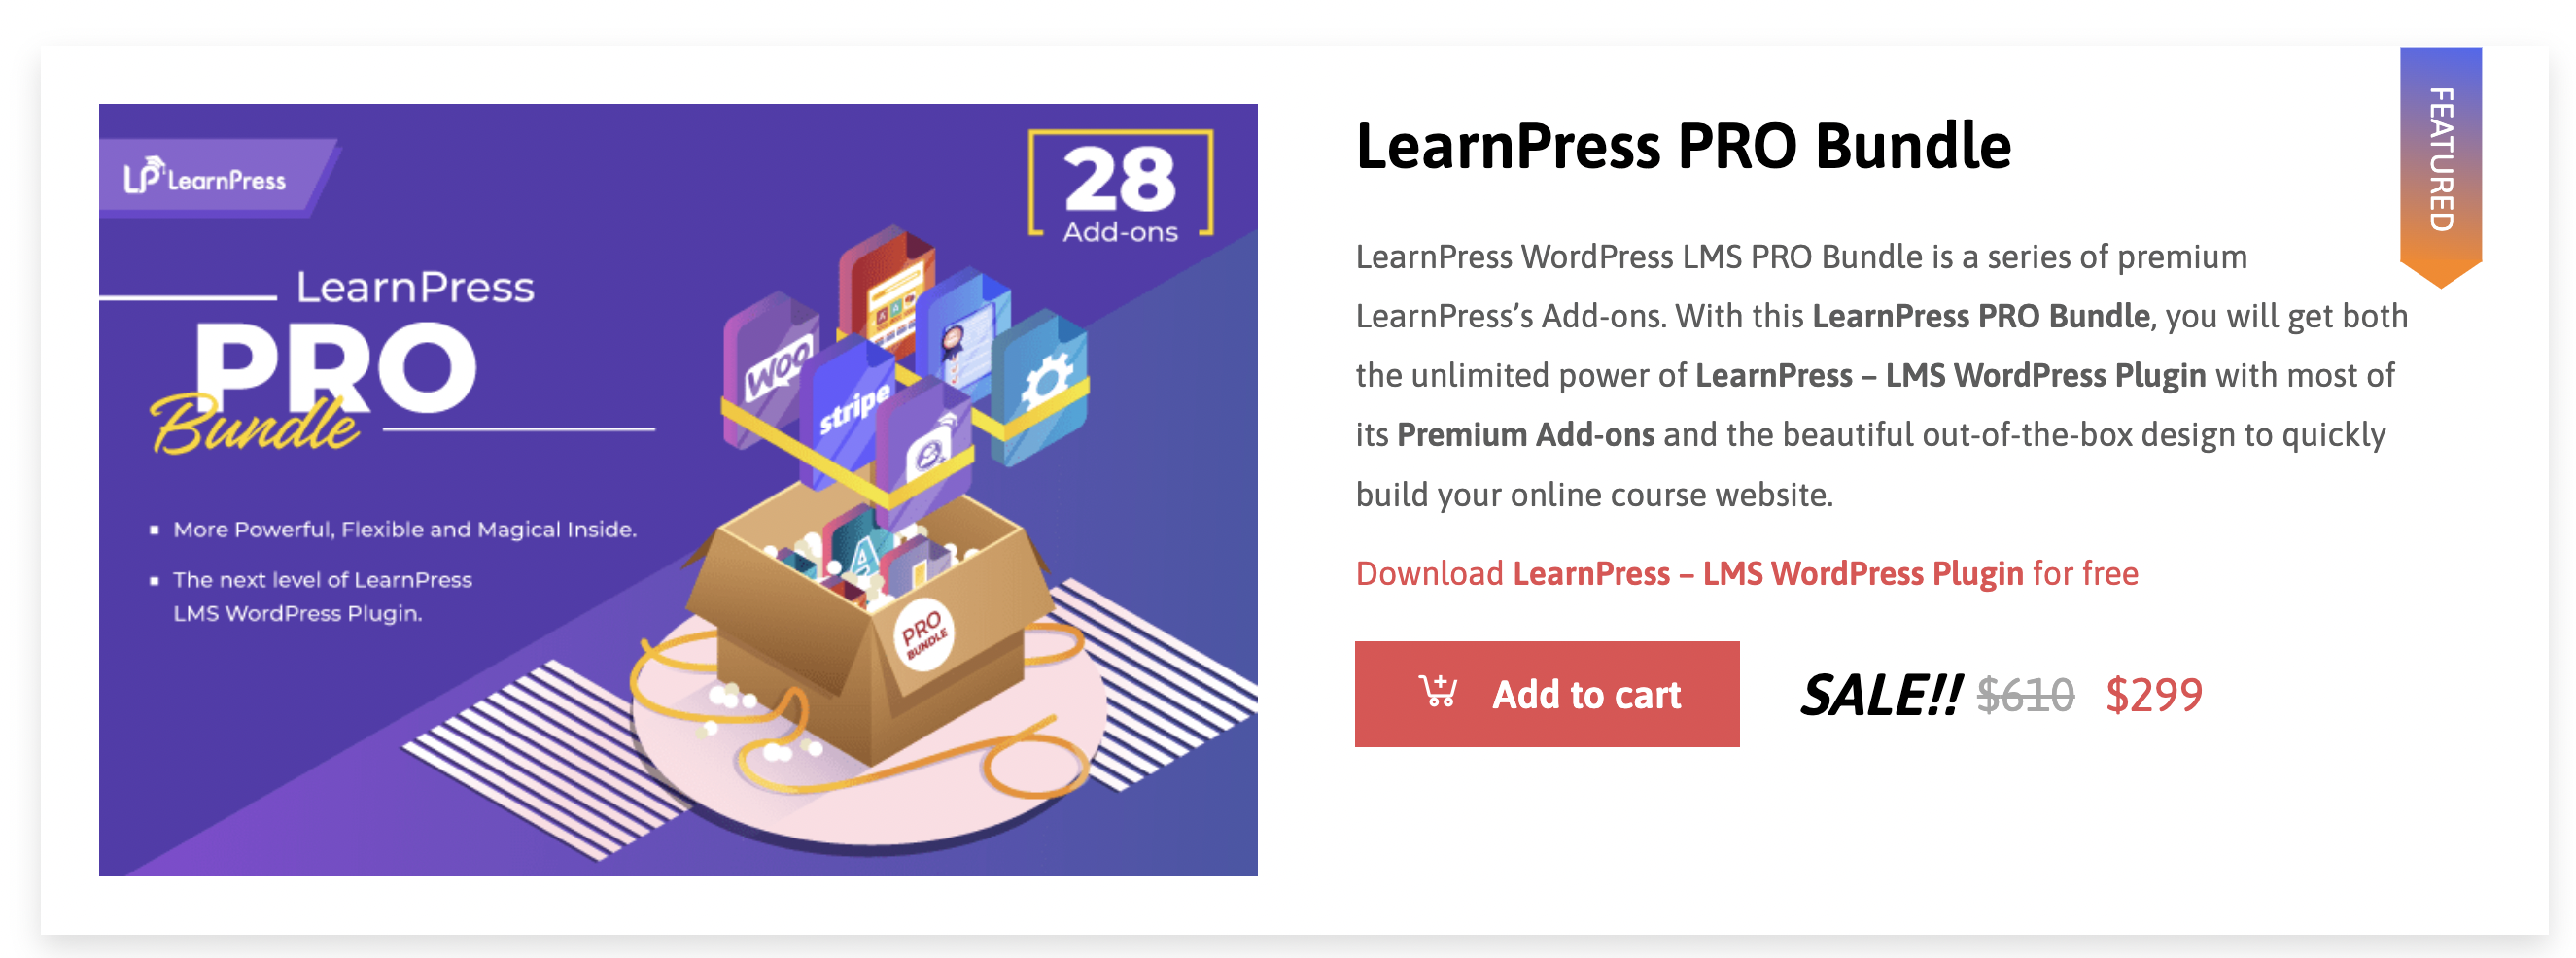 LearnPress verðlagning